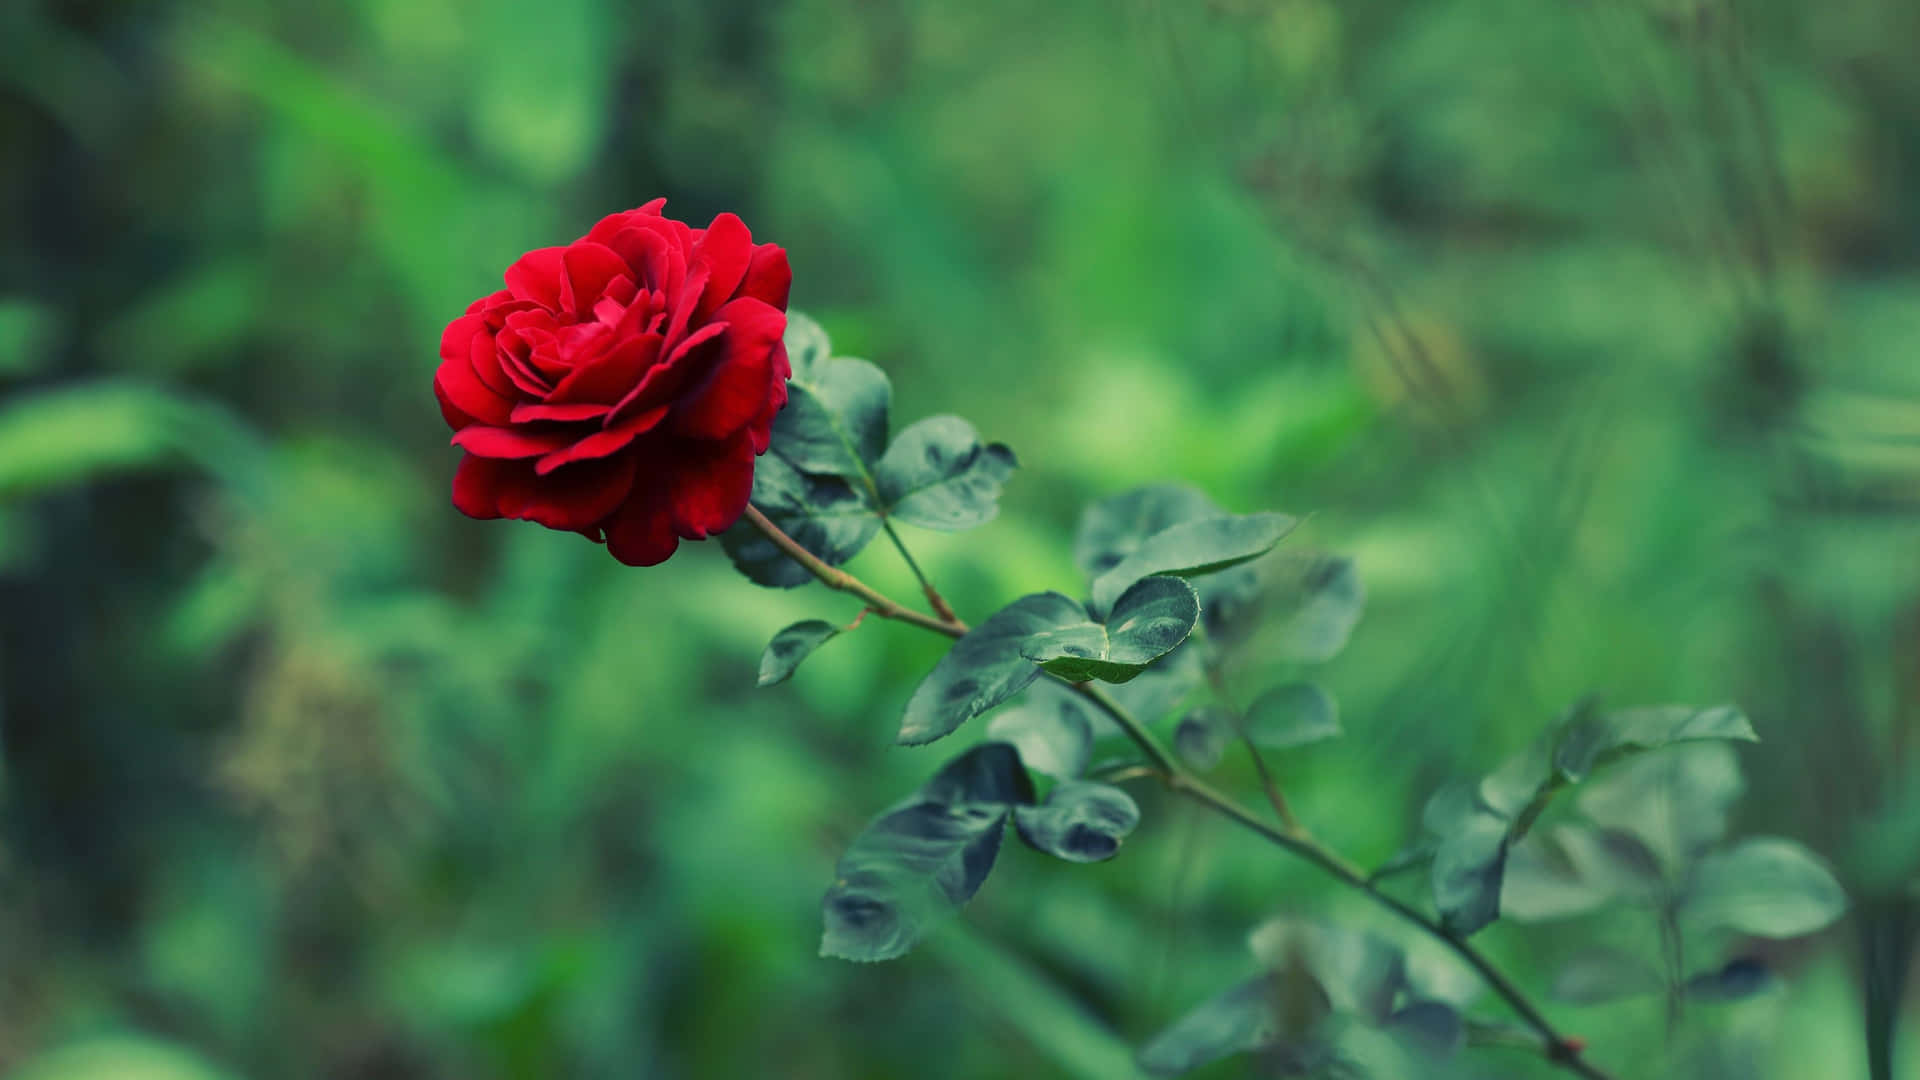 Føl skønheden af naturen med denne smukke kølige rose! Wallpaper